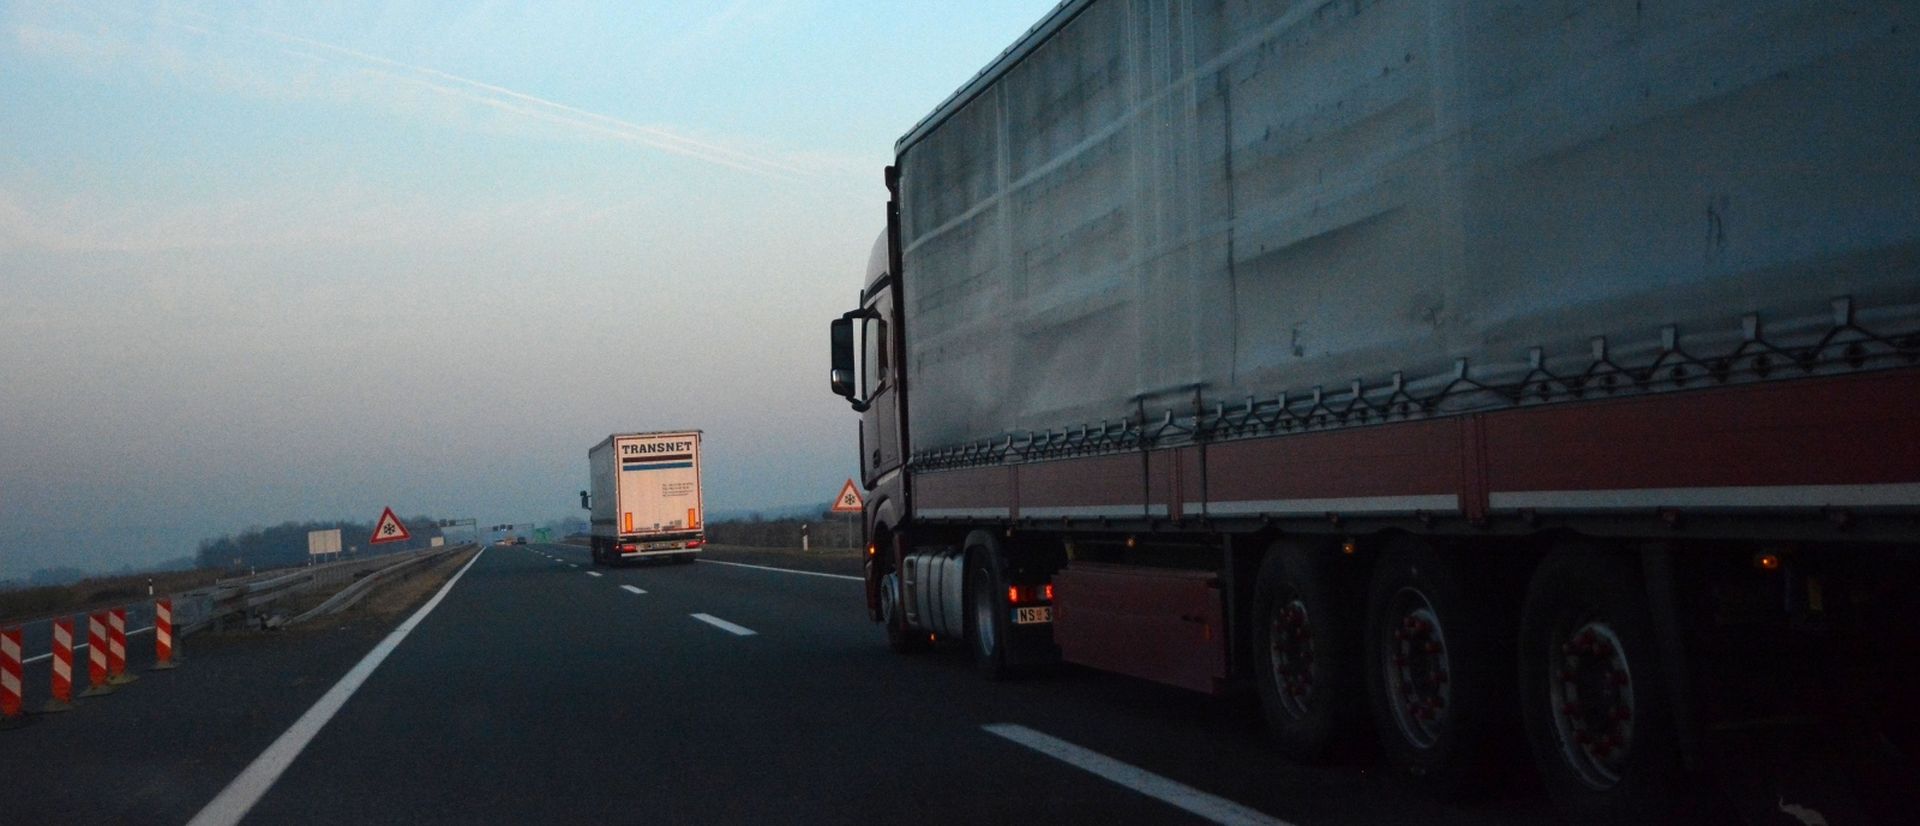 Zbog velikog broja kamiona na autocesti A3, pojačane policijske kontrole 09.11.2018., Luzani/Nova Gradiska - Na autocesti A3 gust je kamionski promet, pa su pojacane kontrole na  moguce krijumcare migranata. Photo: Ivica Galovic/PIXSELL